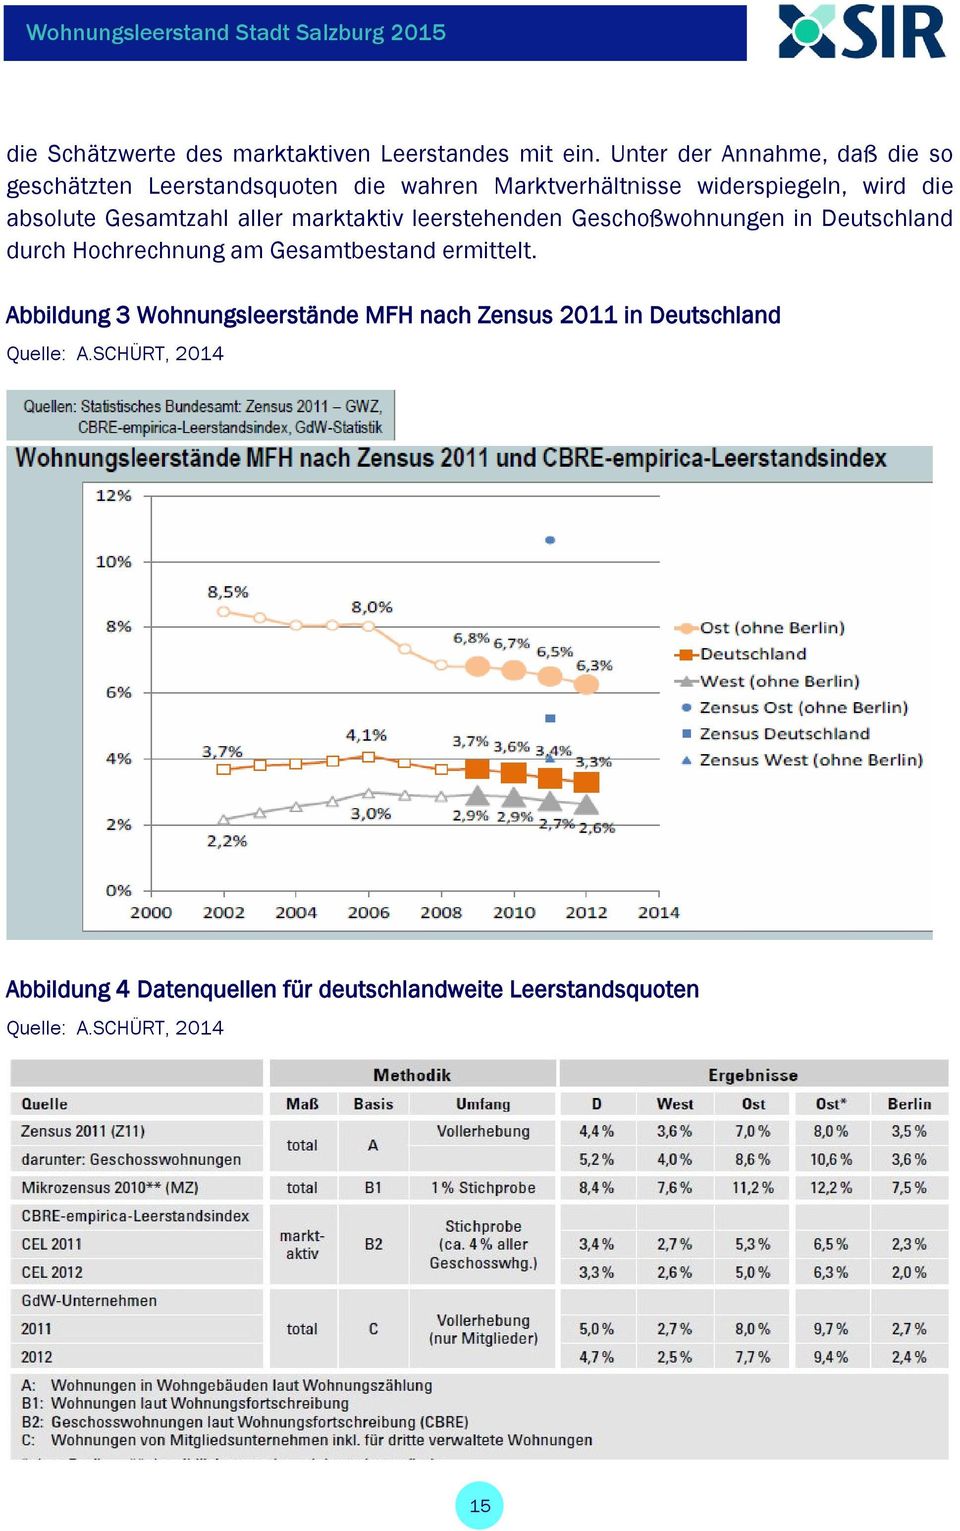 absolute Gesamtzahl aller marktaktiv leerstehenden Geschoßwohnungen in Deutschland durch Hochrechnung am Gesamtbestand